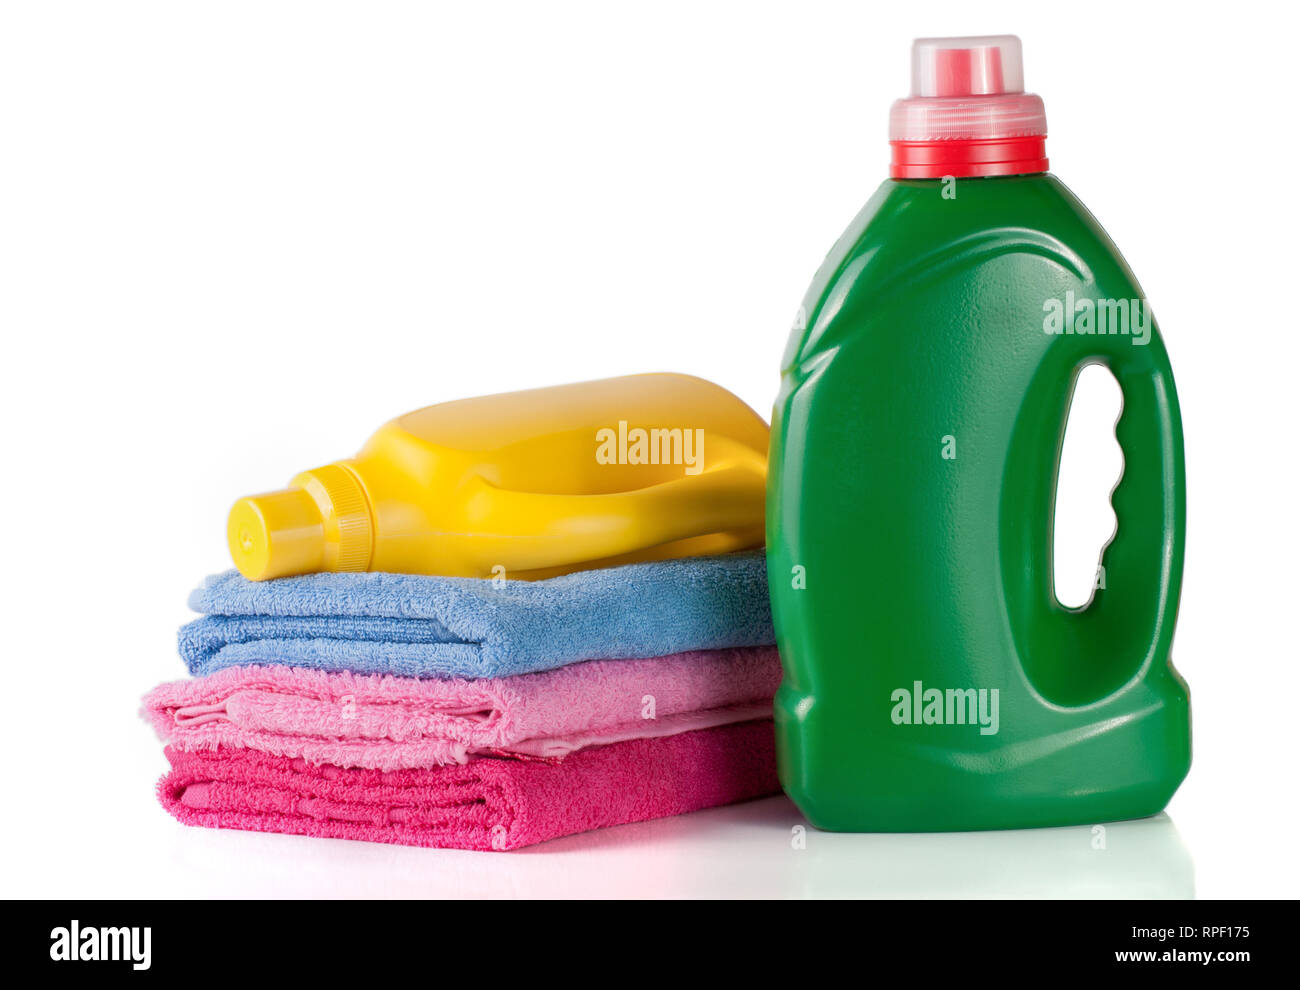 Laundry Detergent Vs Fabric Softener Vs Fabric Conditioner